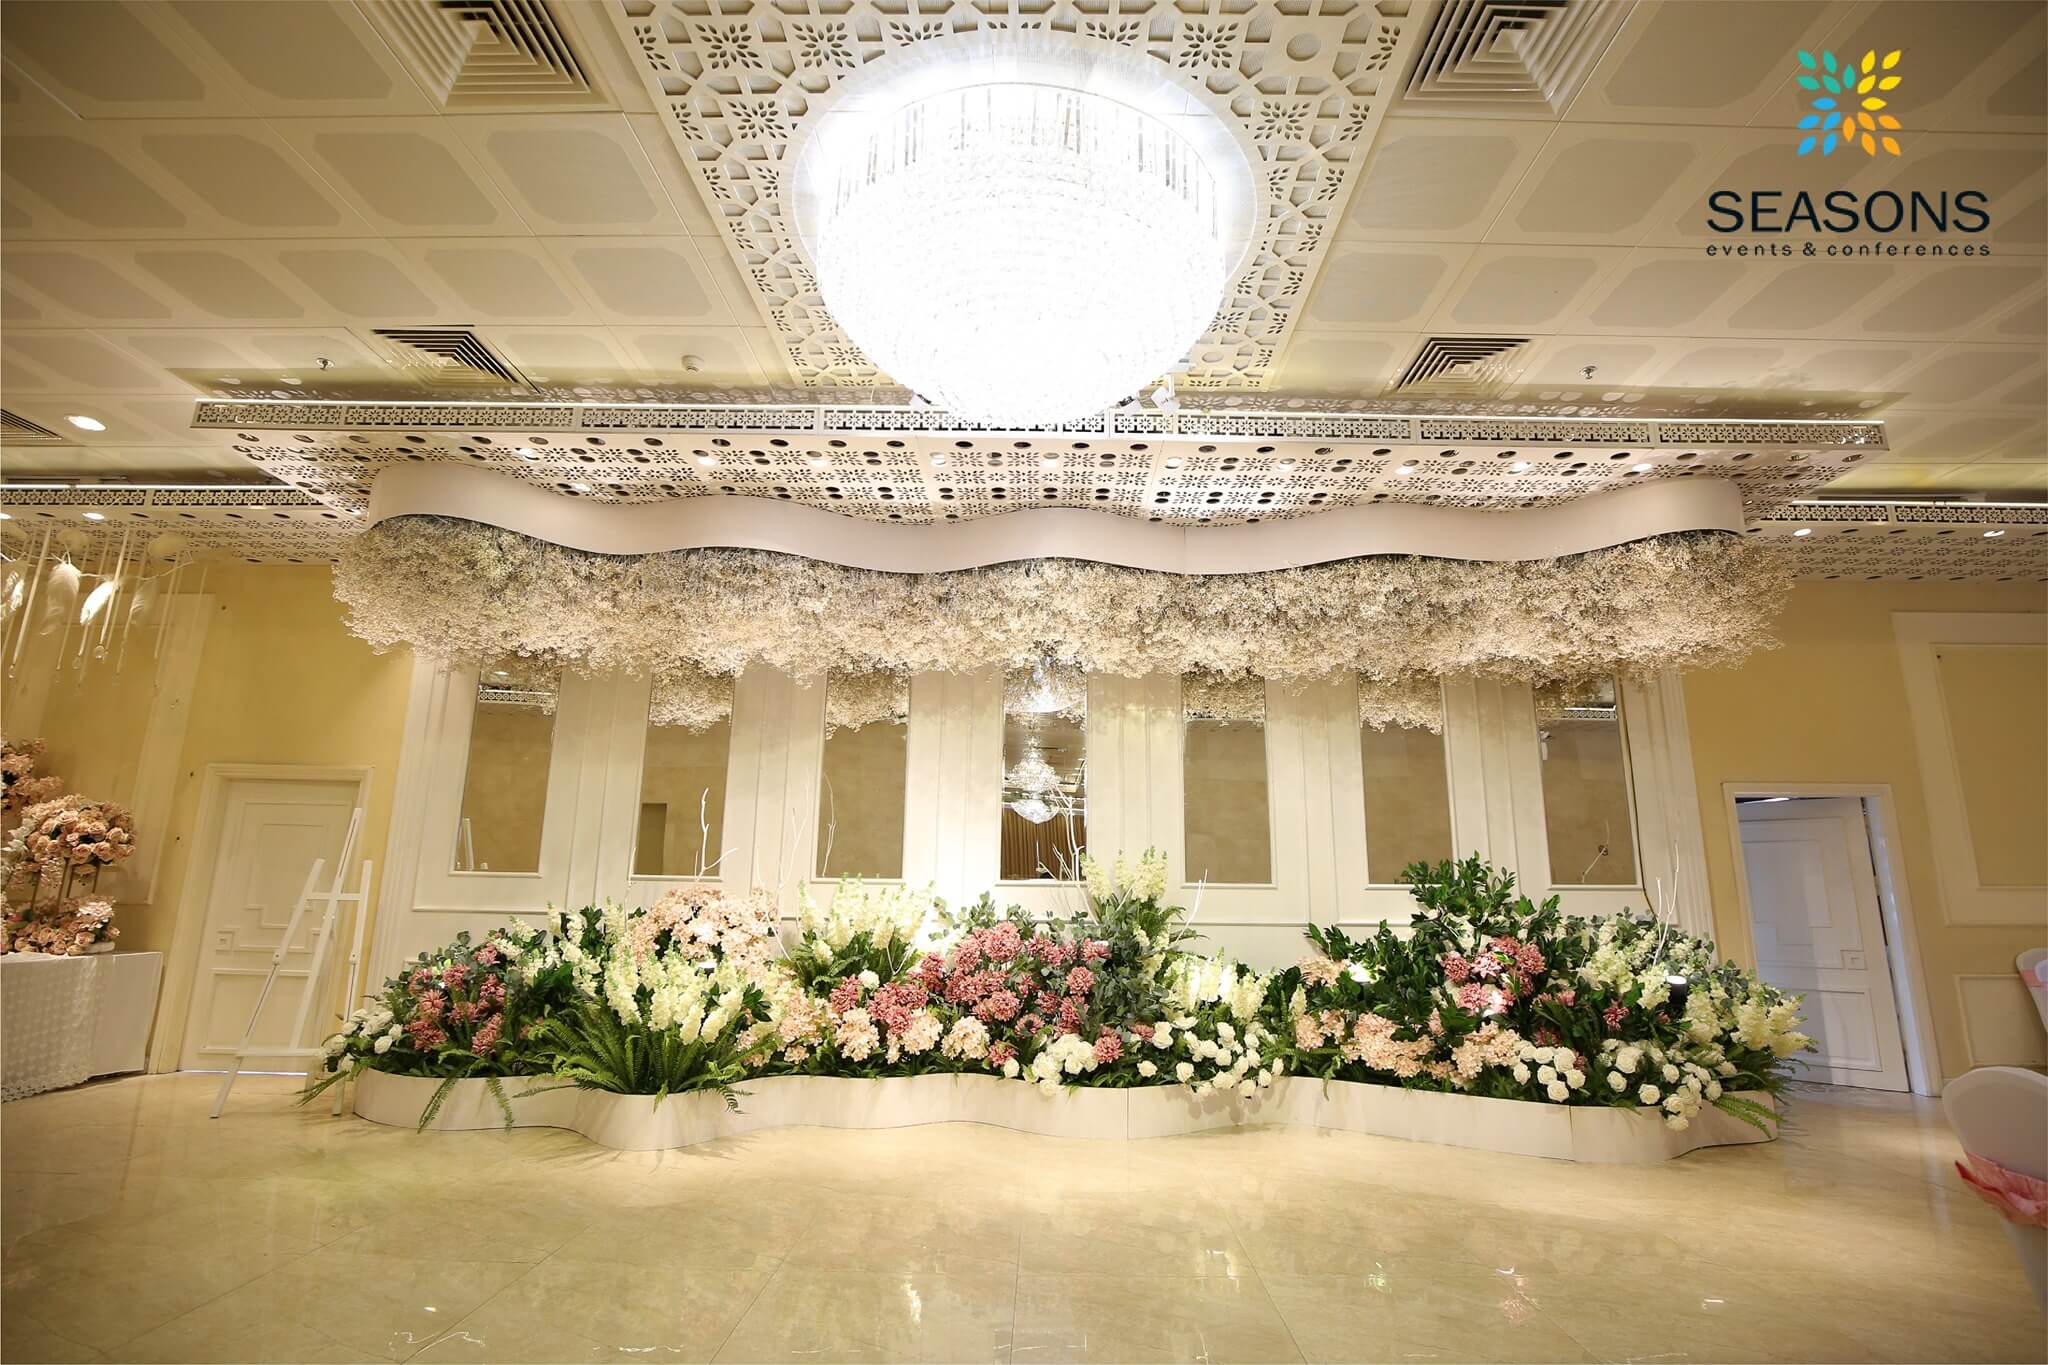 Trung tâm hội nghị và tiệc cưới Seasons Marry